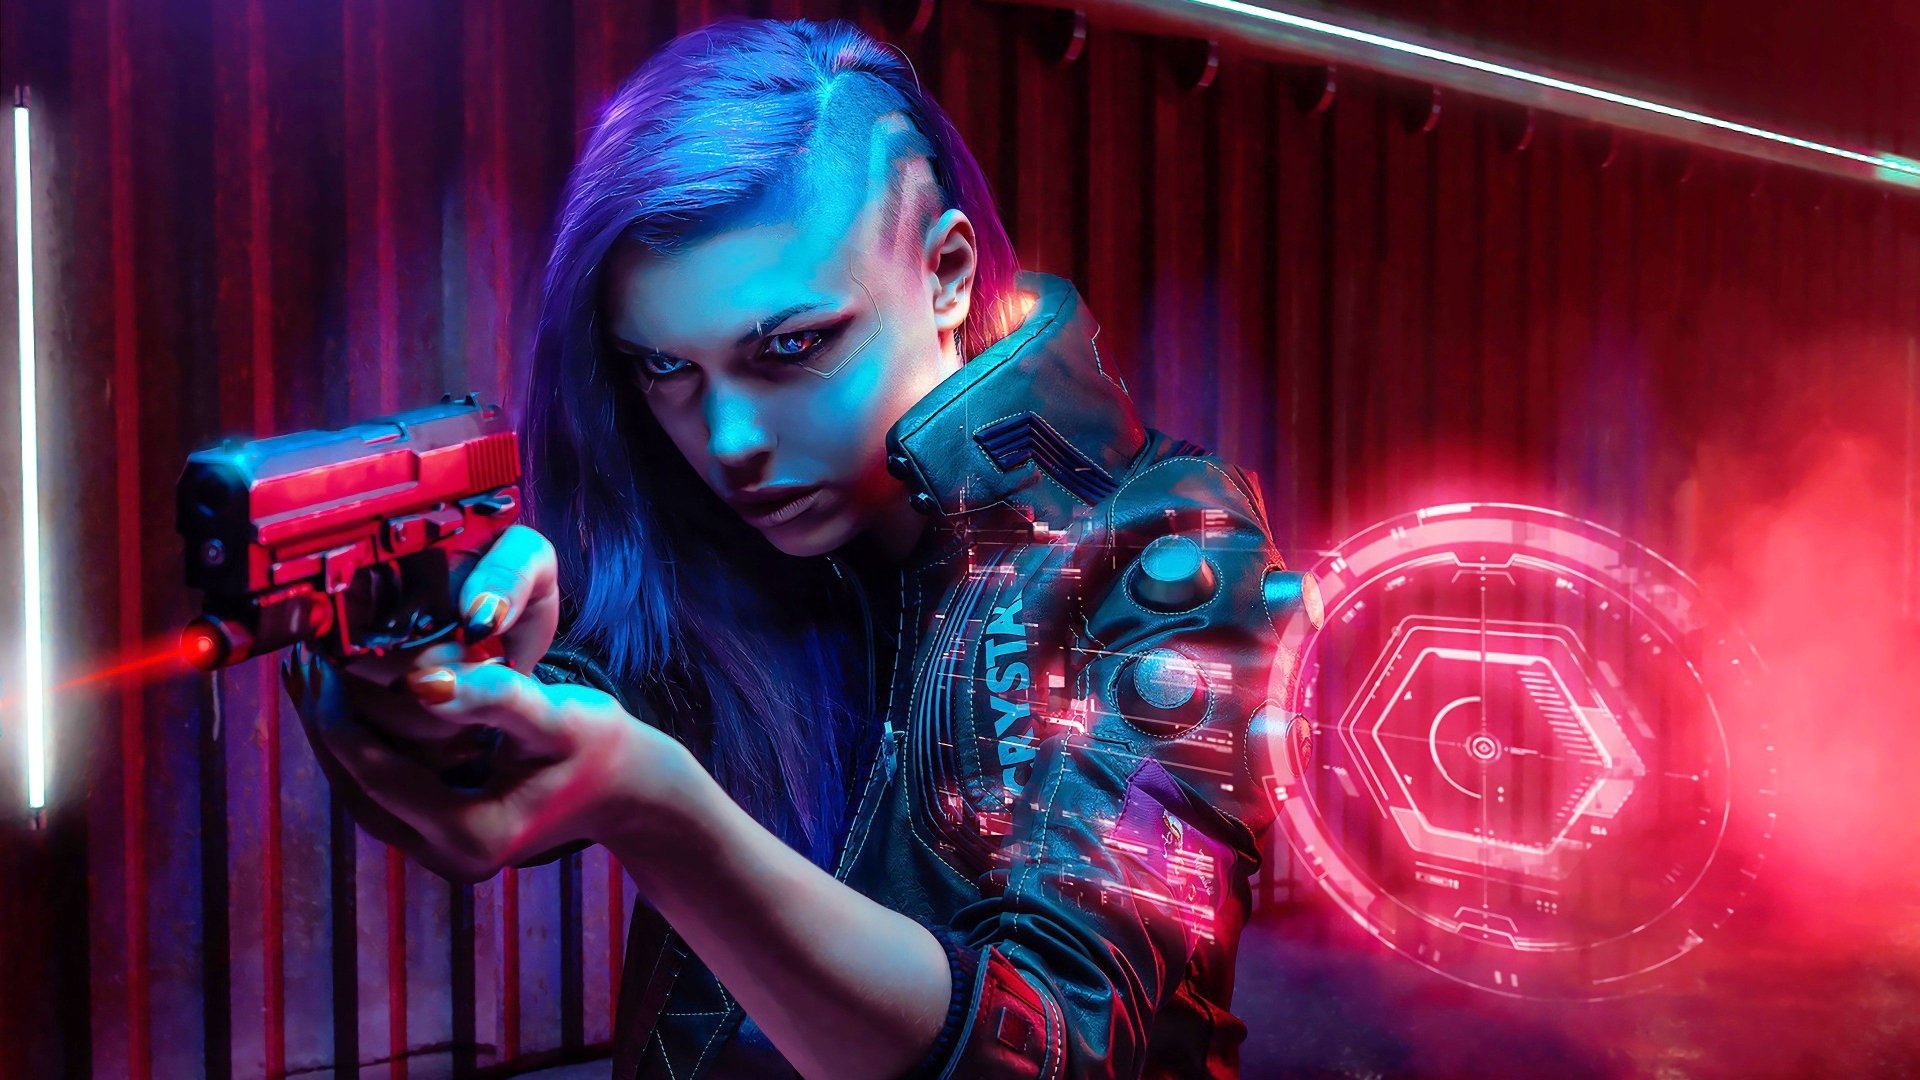 Cyberpunk Cyberpunk 2077 Woman With Gun Wallpaper Resolution1920x1080 Id1206222 9449